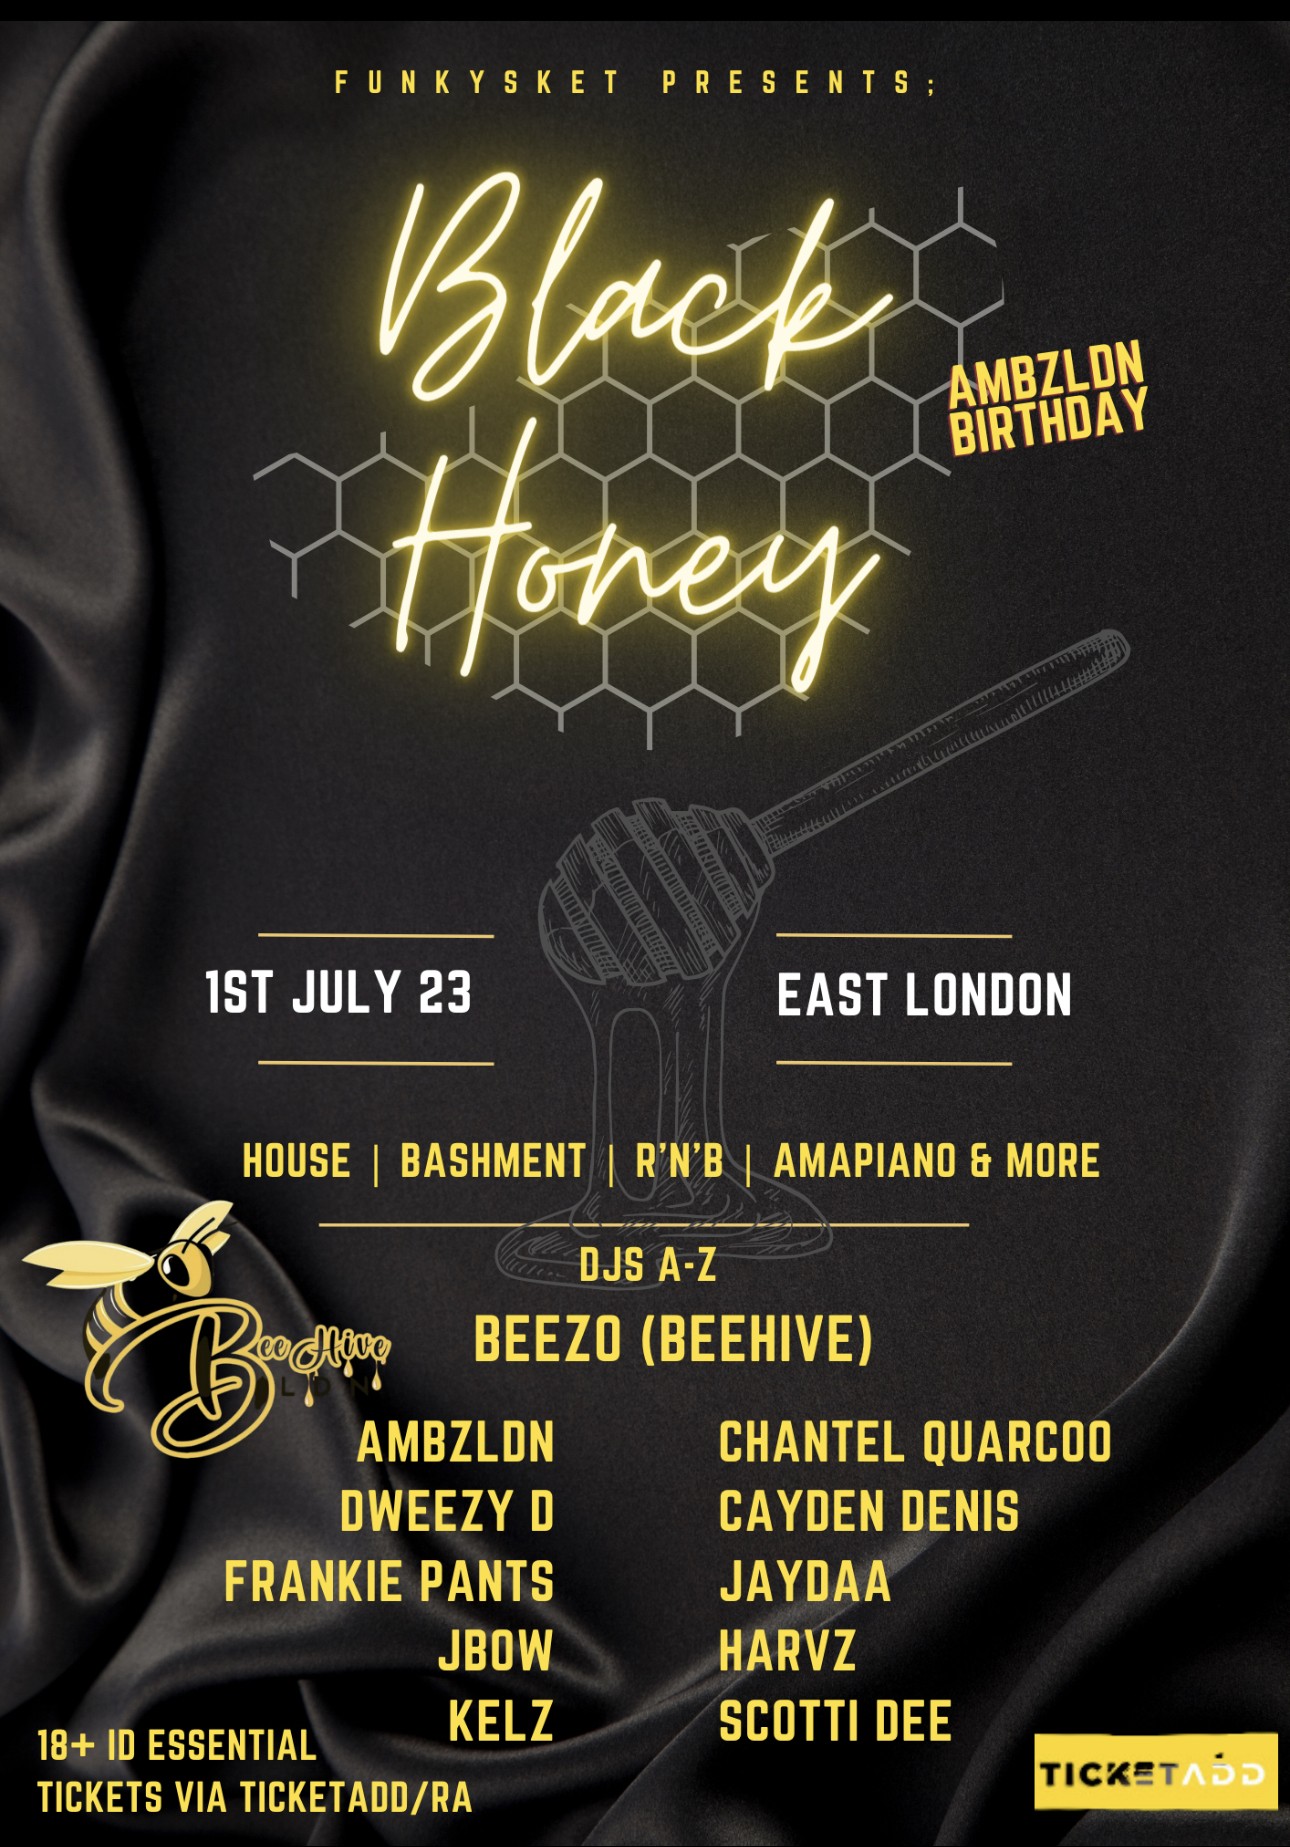 Black Honey - AmbzLdn’s Birthday